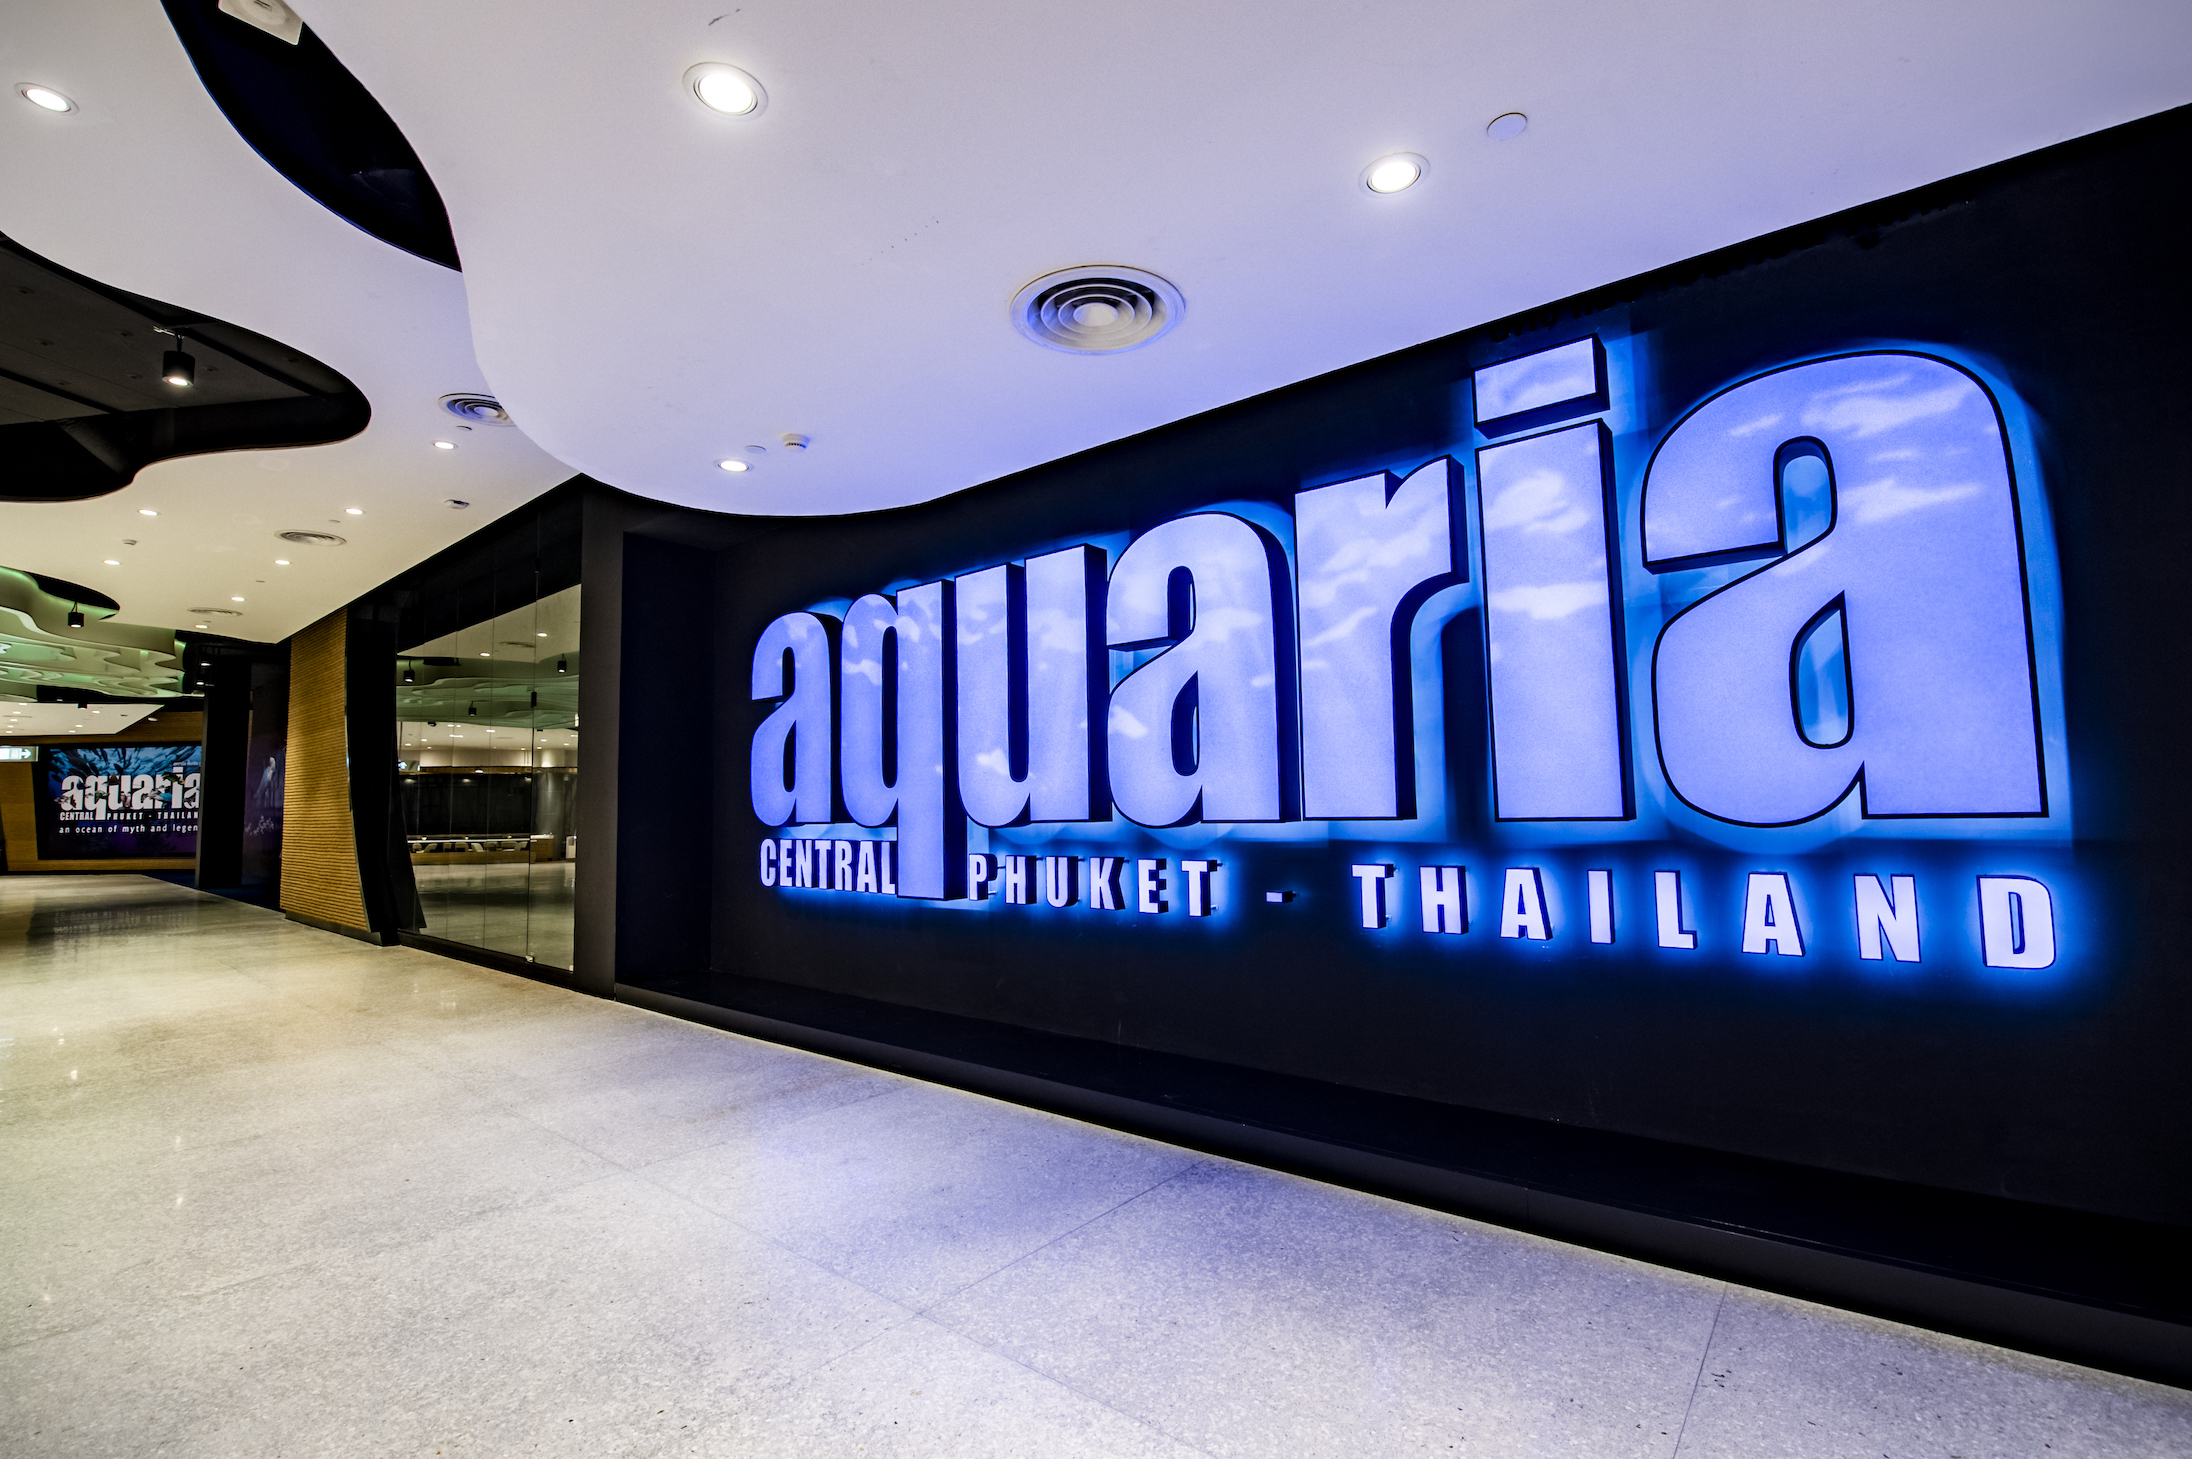 Aquaria Central Festival Phuket — Vertigo Video Productions